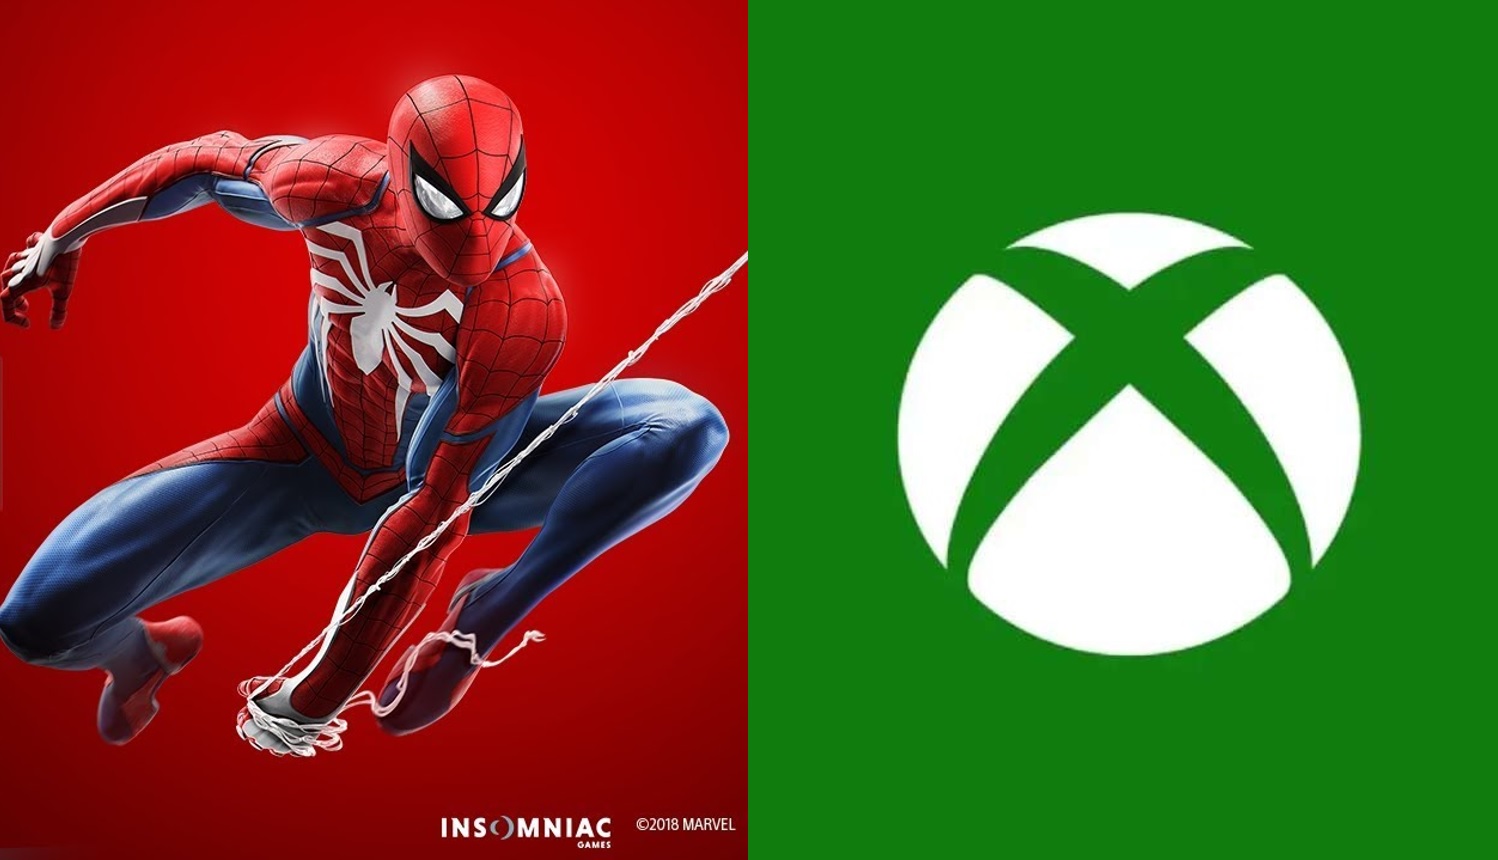 Un cross-over entre Marvel's Spider-Man y Flash? Los modders hacen su magia  con el juego de Sony en PC